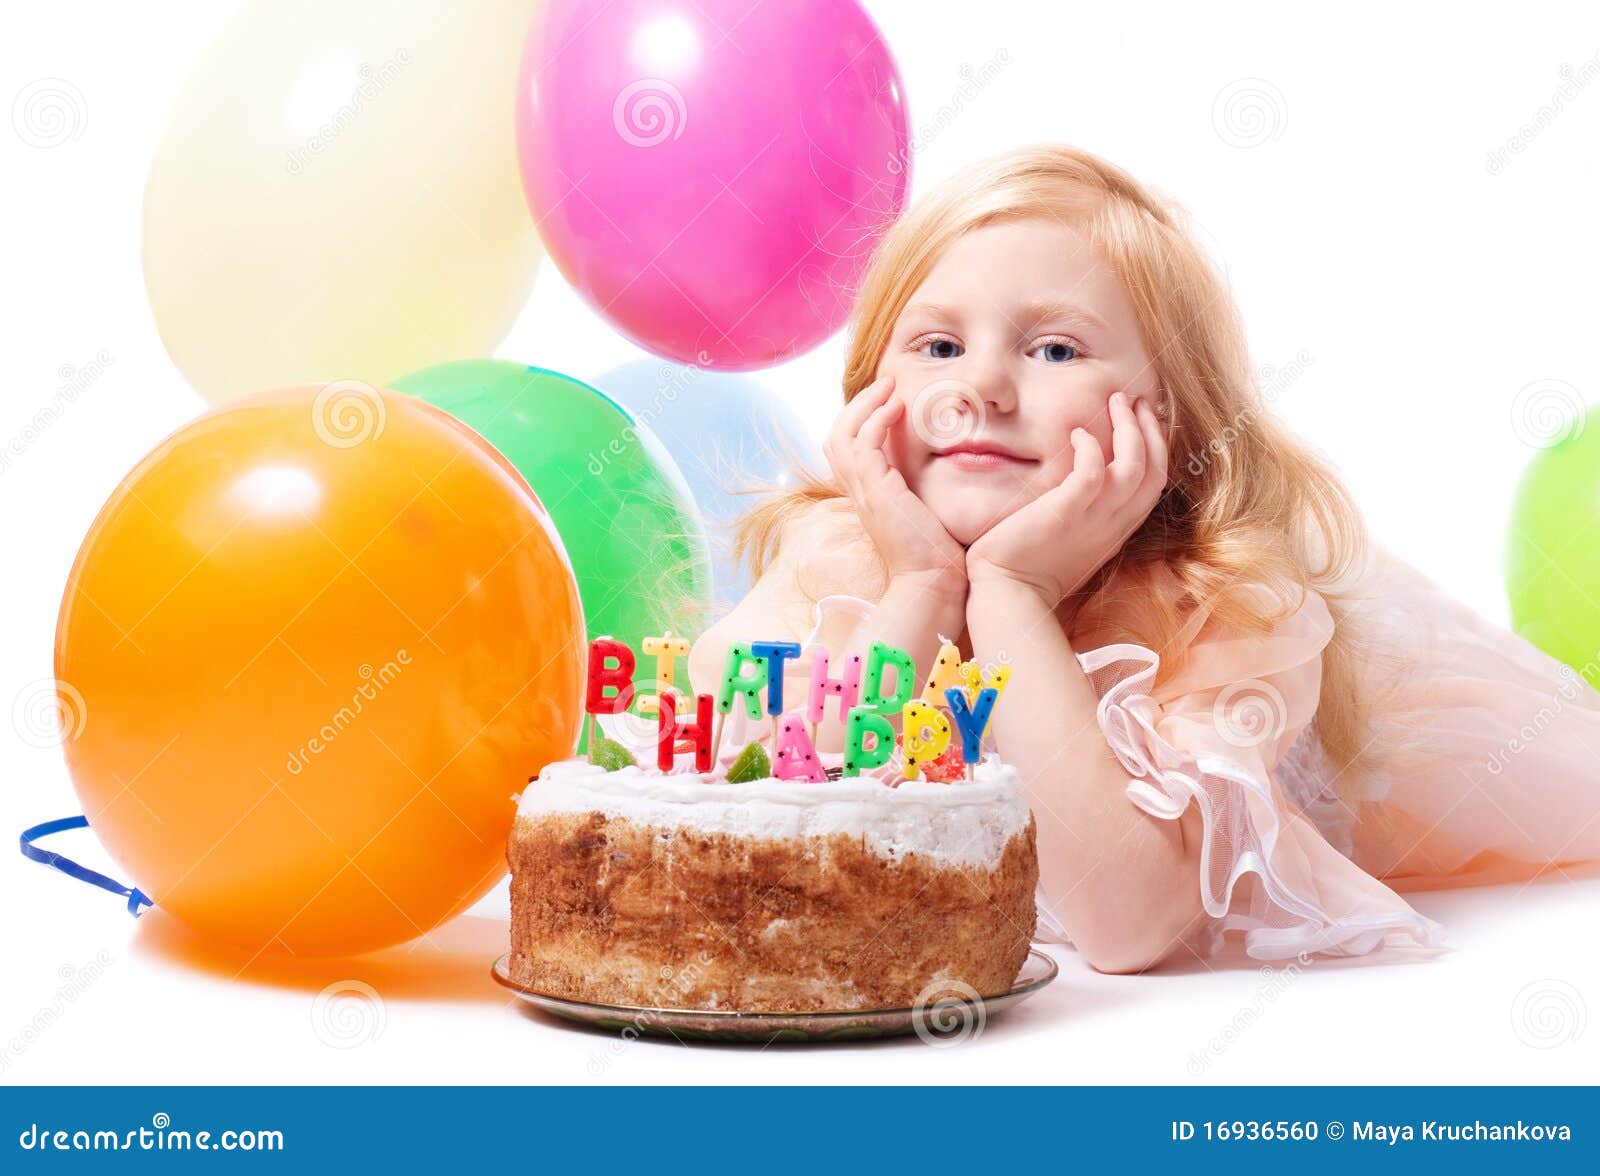 愉快的女孩和她的生日蛋糕 库存图片. 图片 包括有 蛋糕, 华美, 活动, 演奏台, 礼品, 放血, 棚车 - 54211147